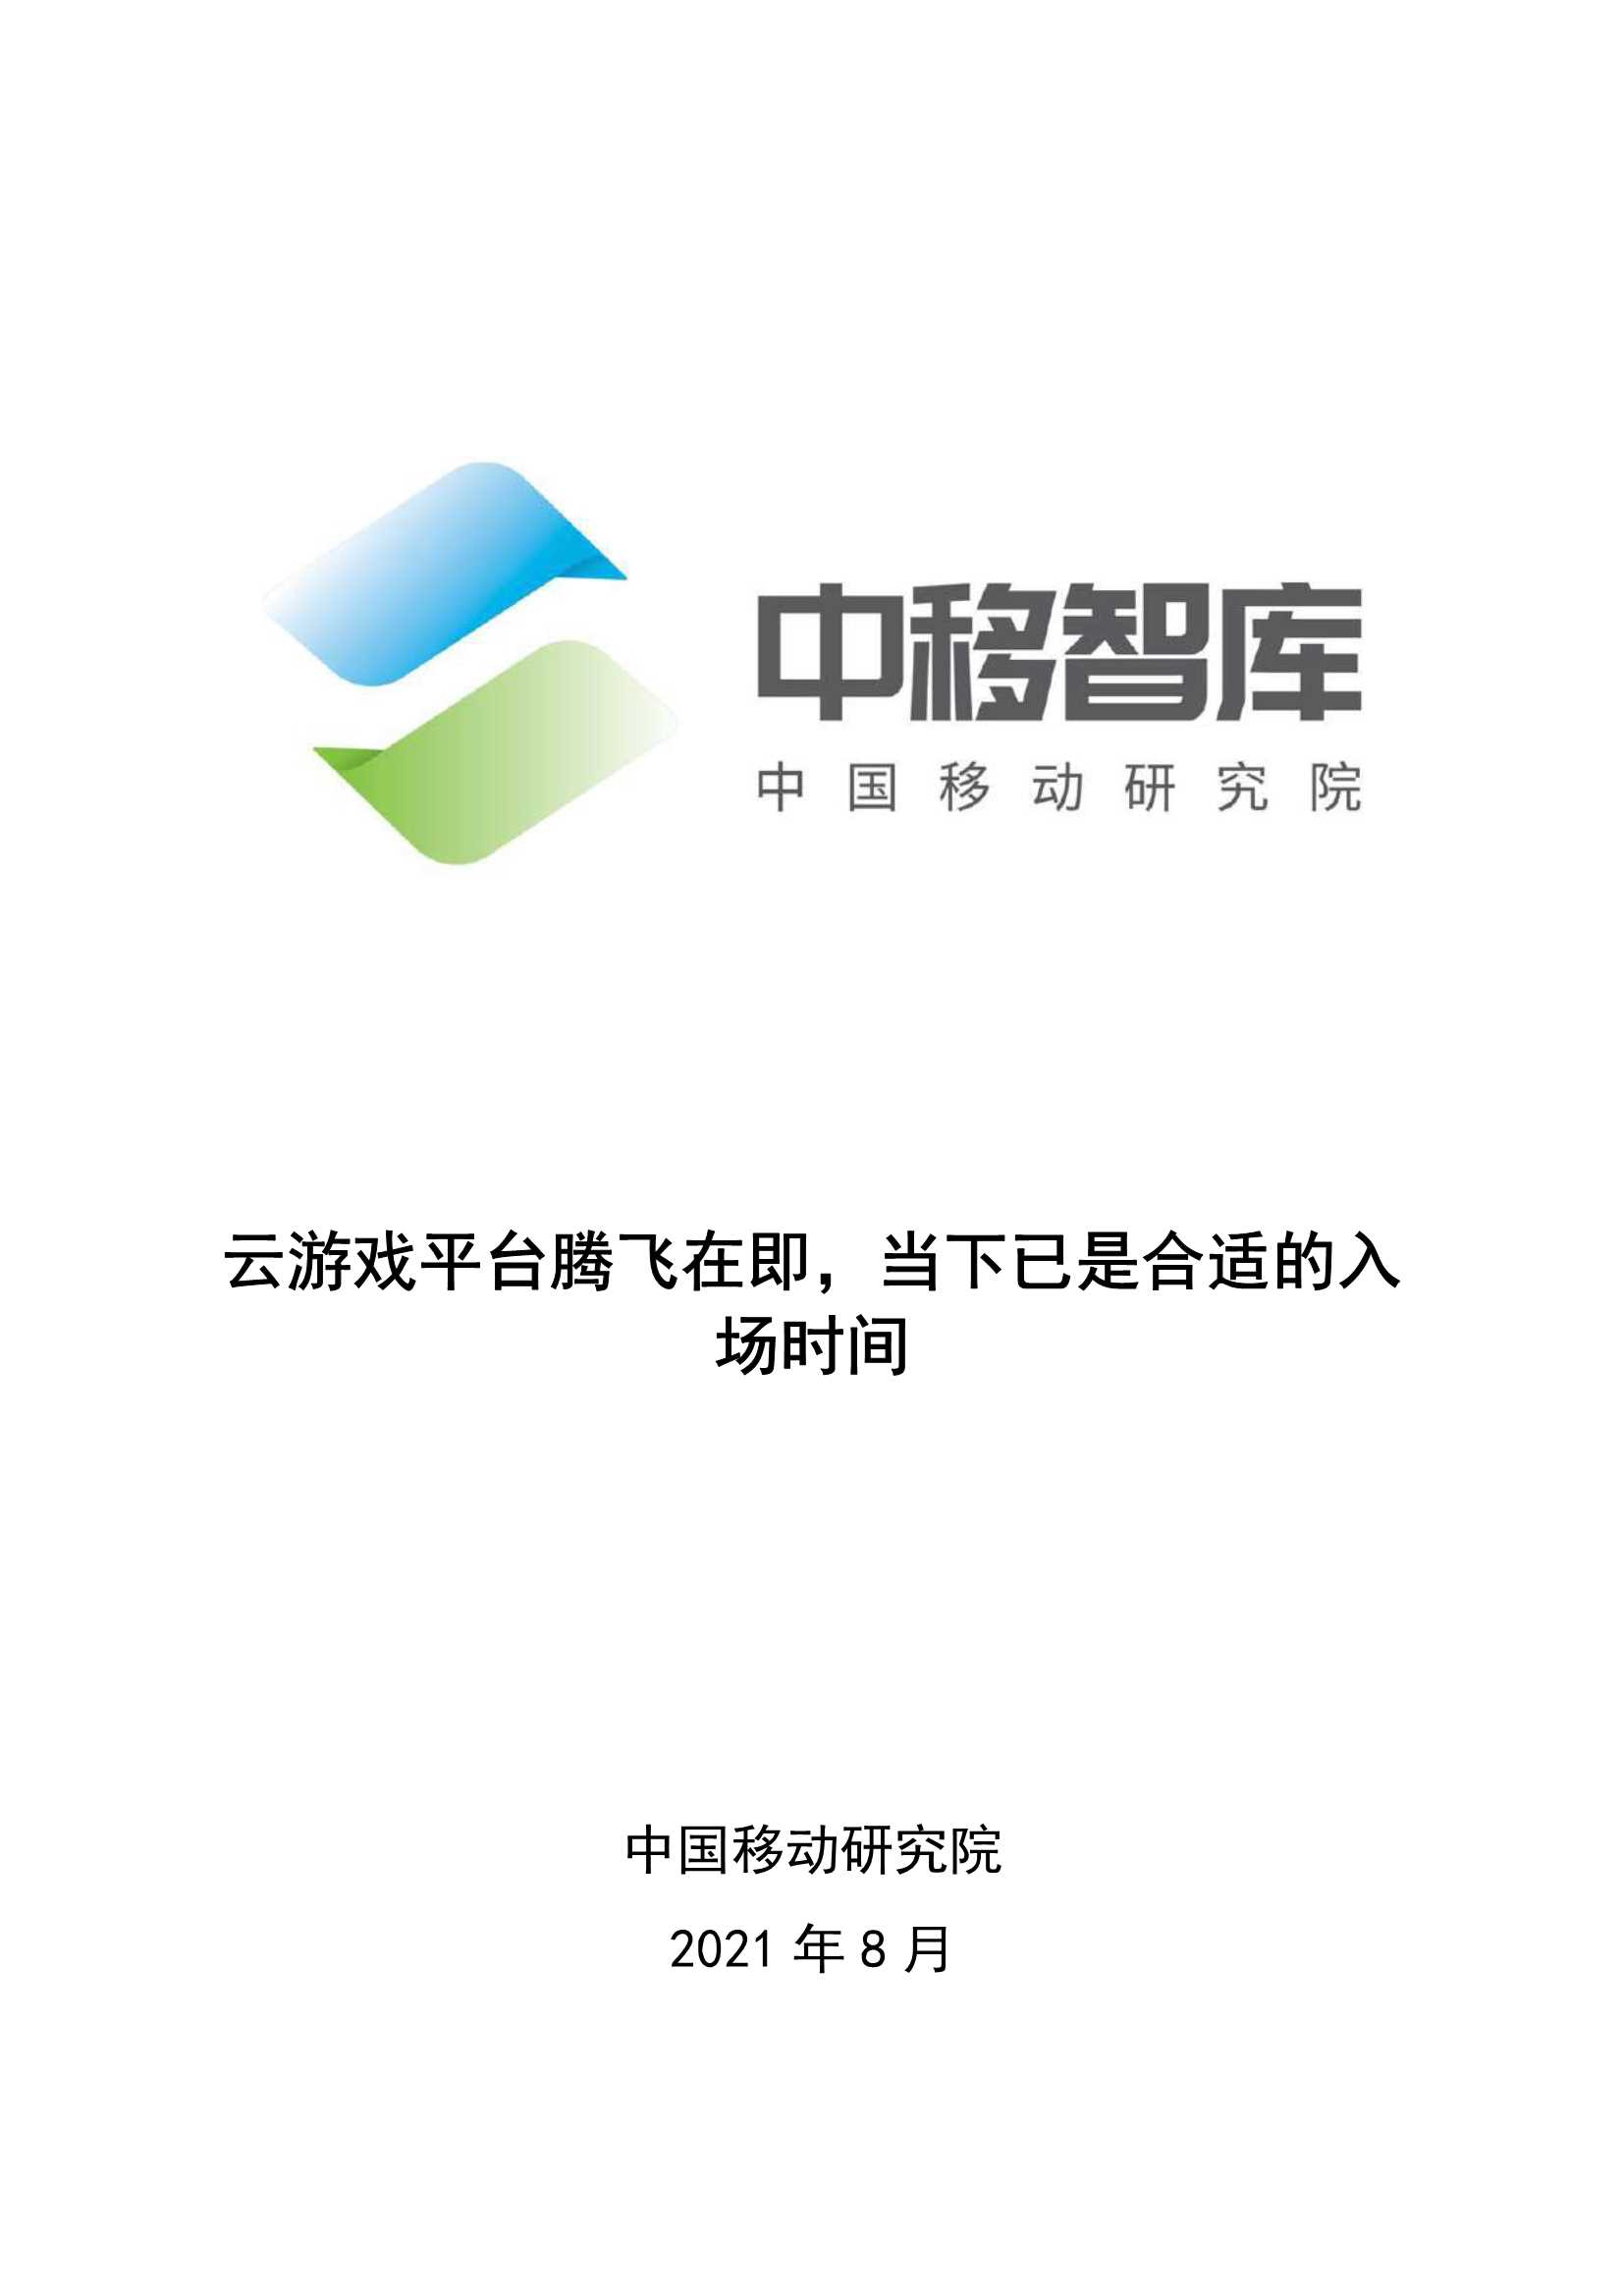 中国移动研究院-云游戏平台腾飞在即，当下已是合适的入场时间-2021.08-15页